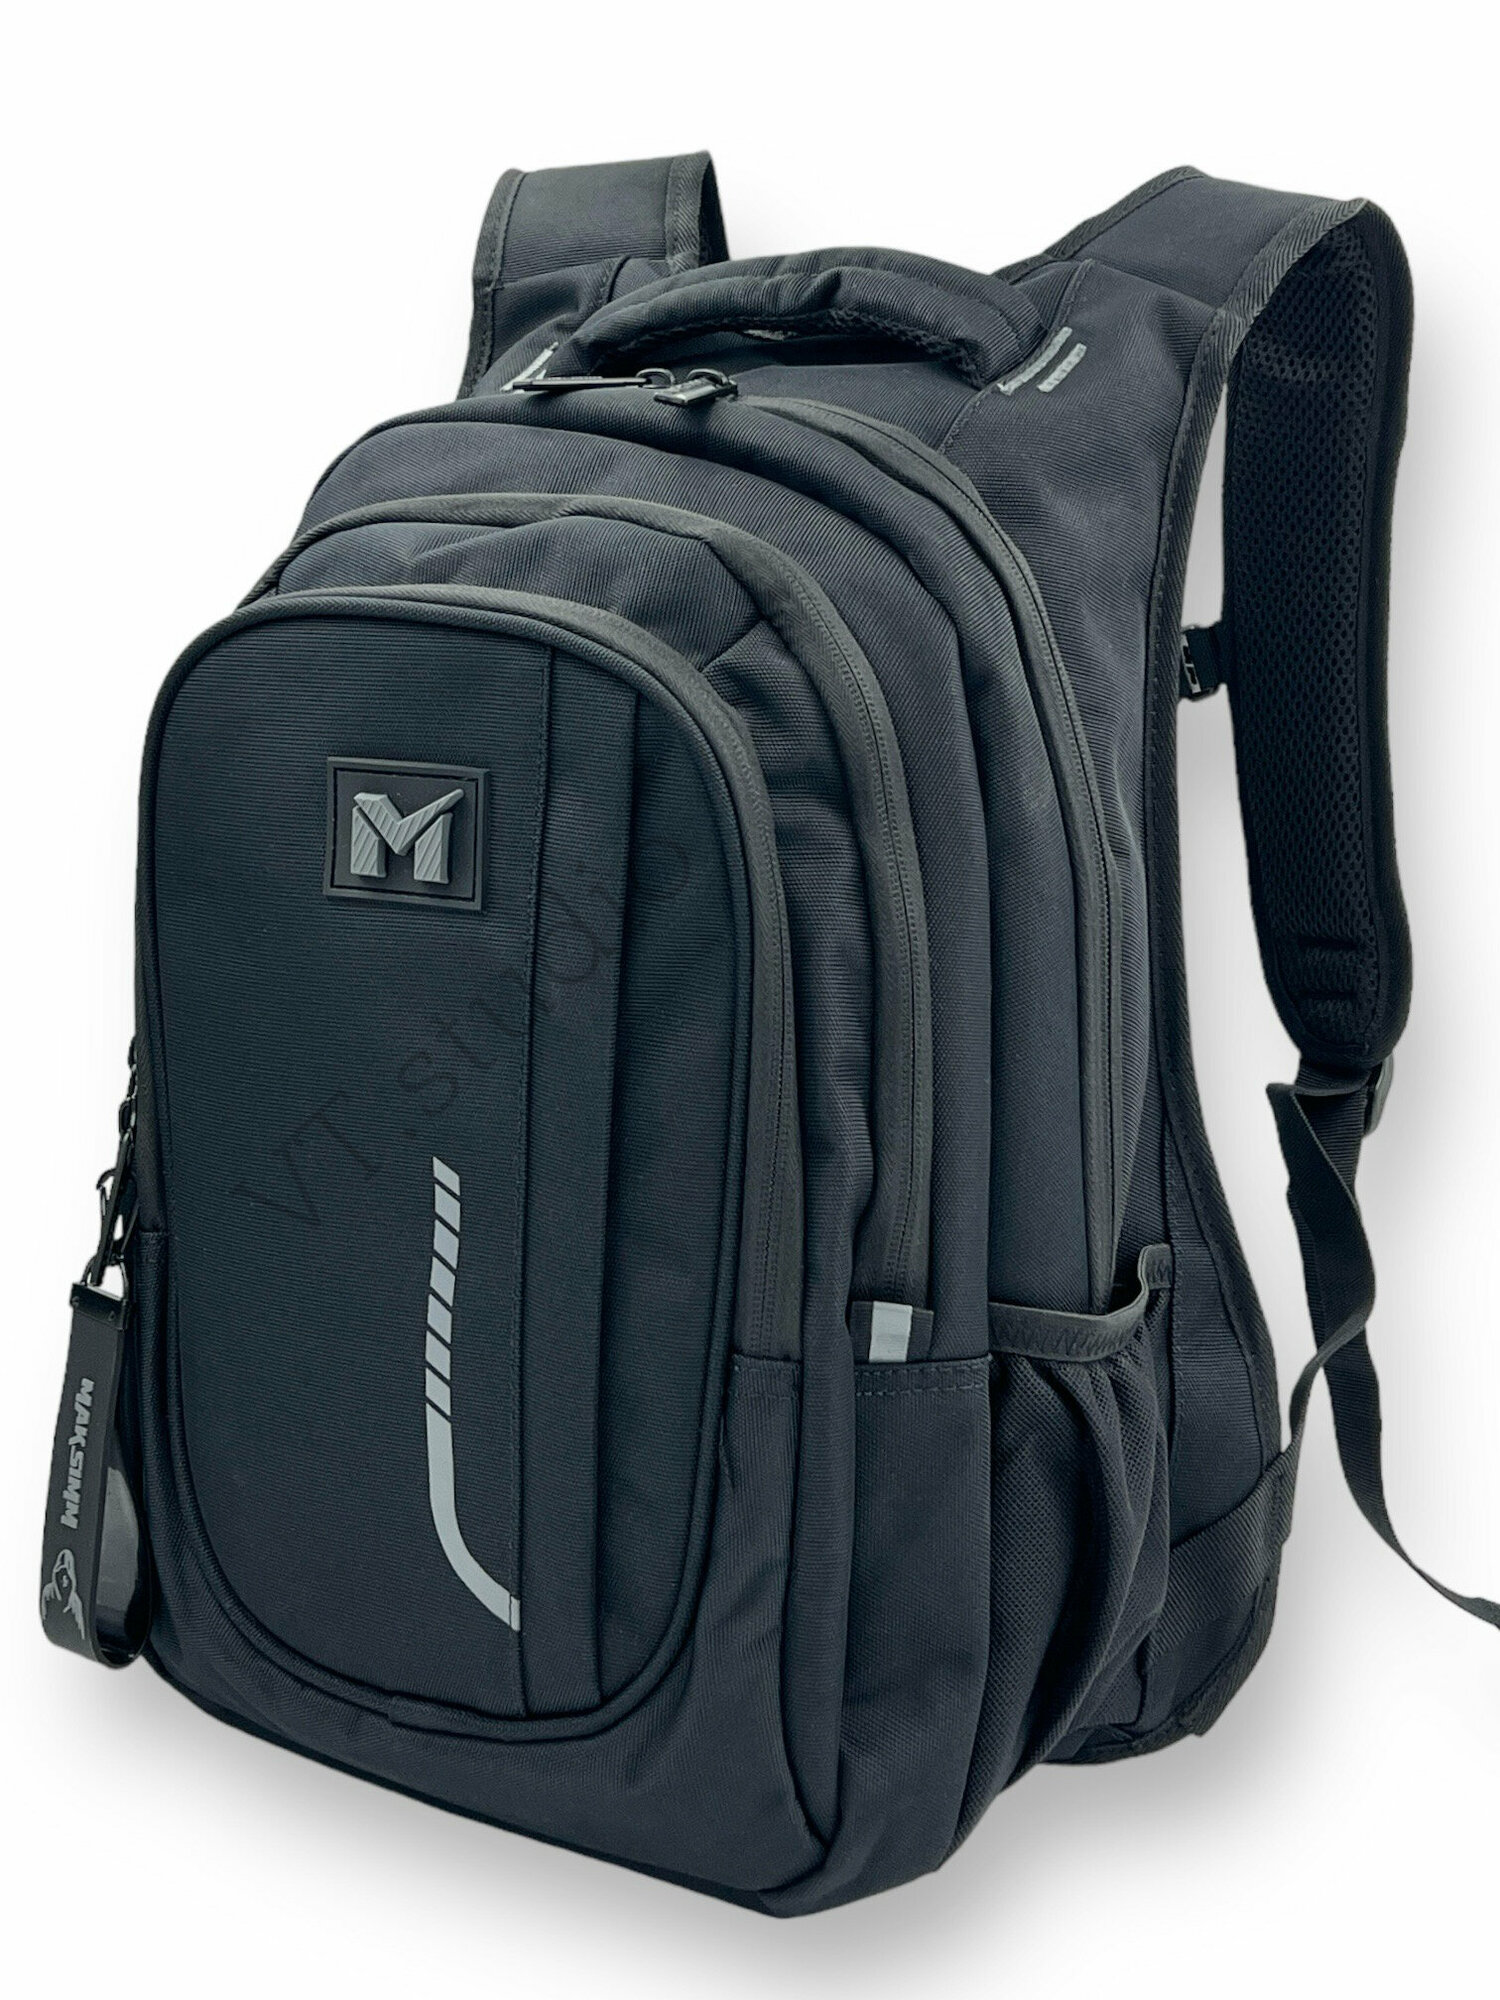 Рюкзак школьный MAKSIMM E091 для мальчика (подростков) черно-серый с анатомической спинкой